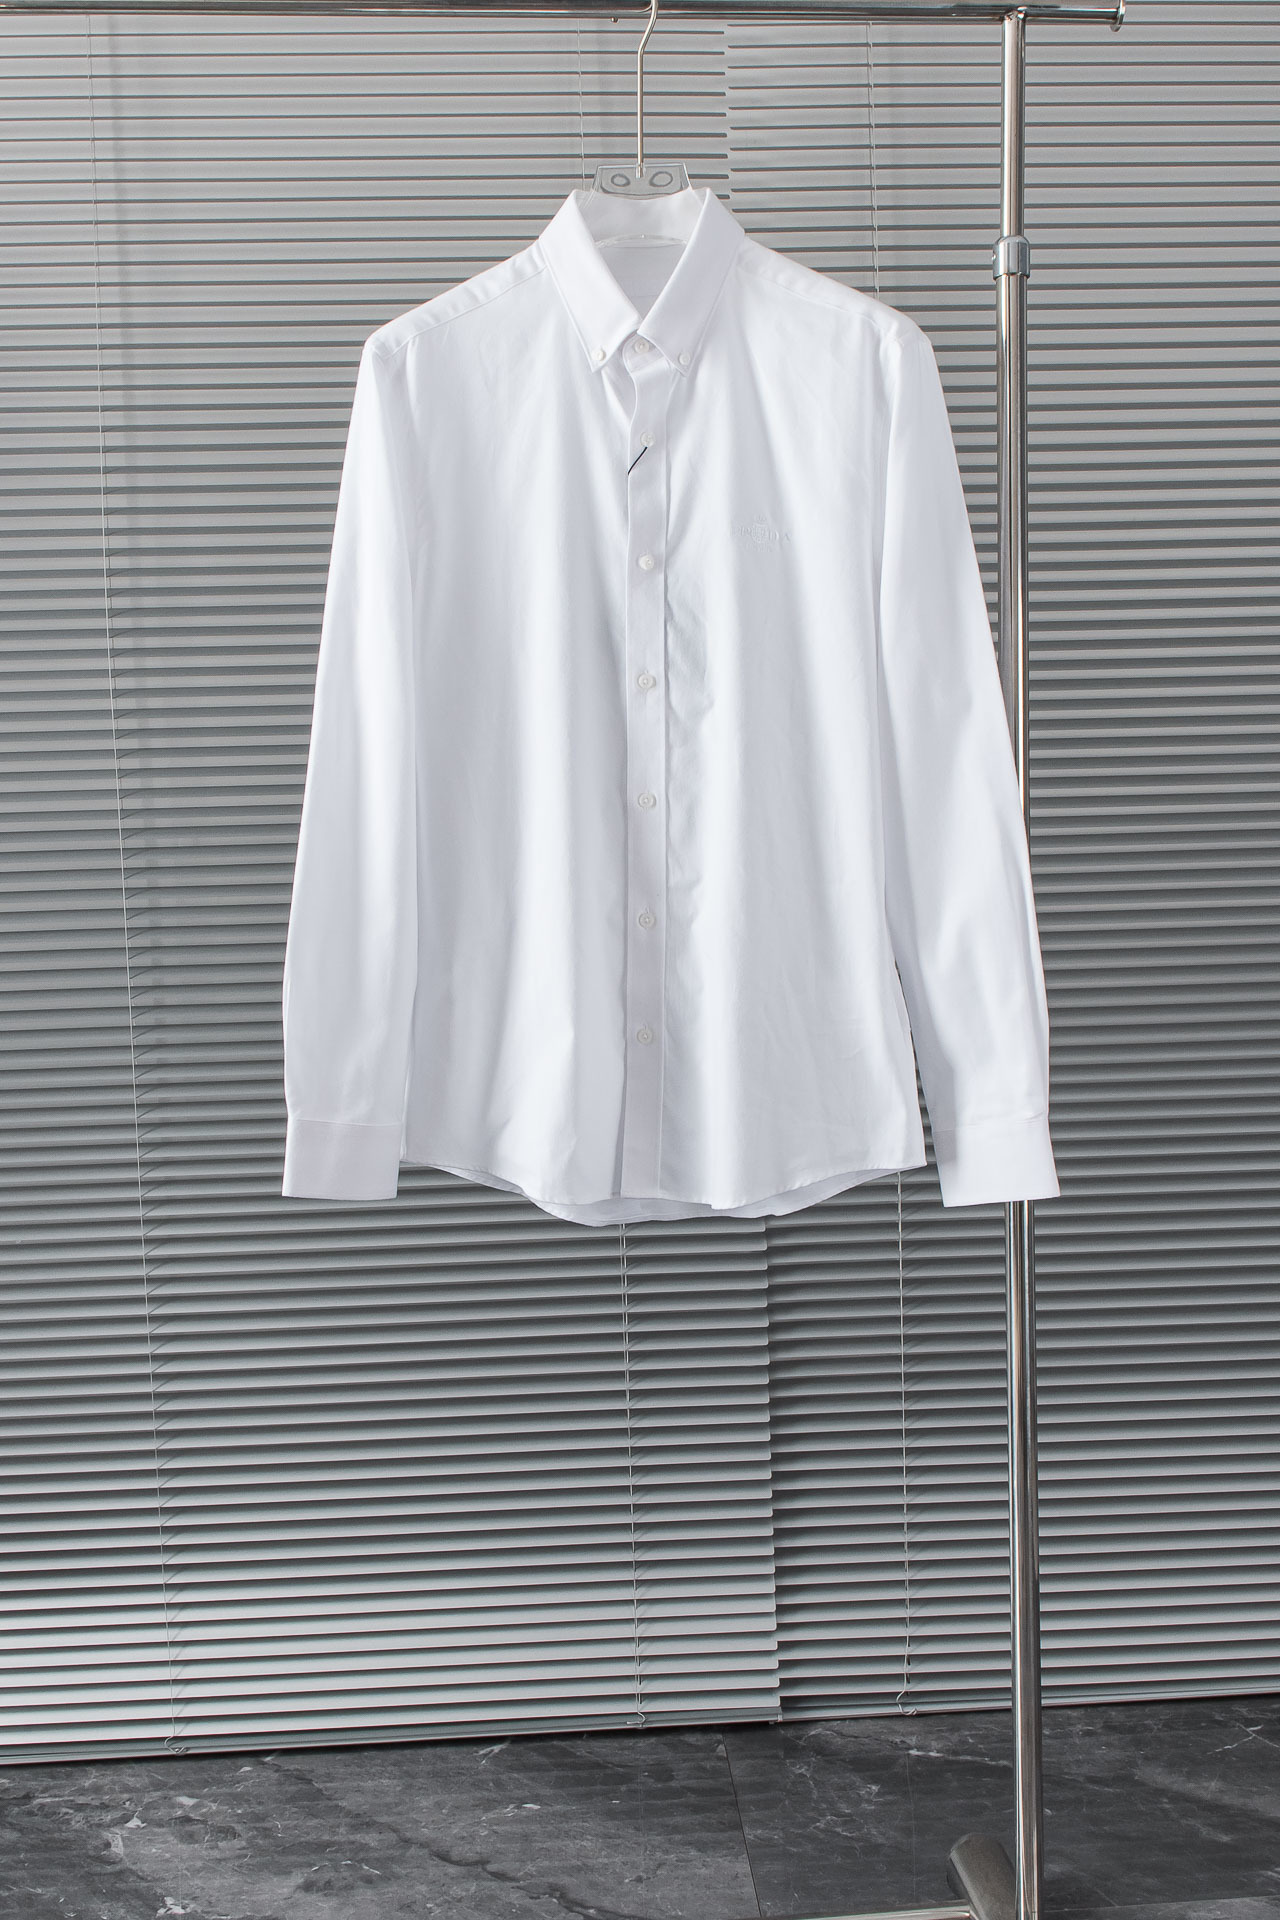 New#！！！普*达PR*DA高品质的珍藏级进口高织棉男士条纹长袖衬衫!24FW秋冬新款高品质的奢品者首